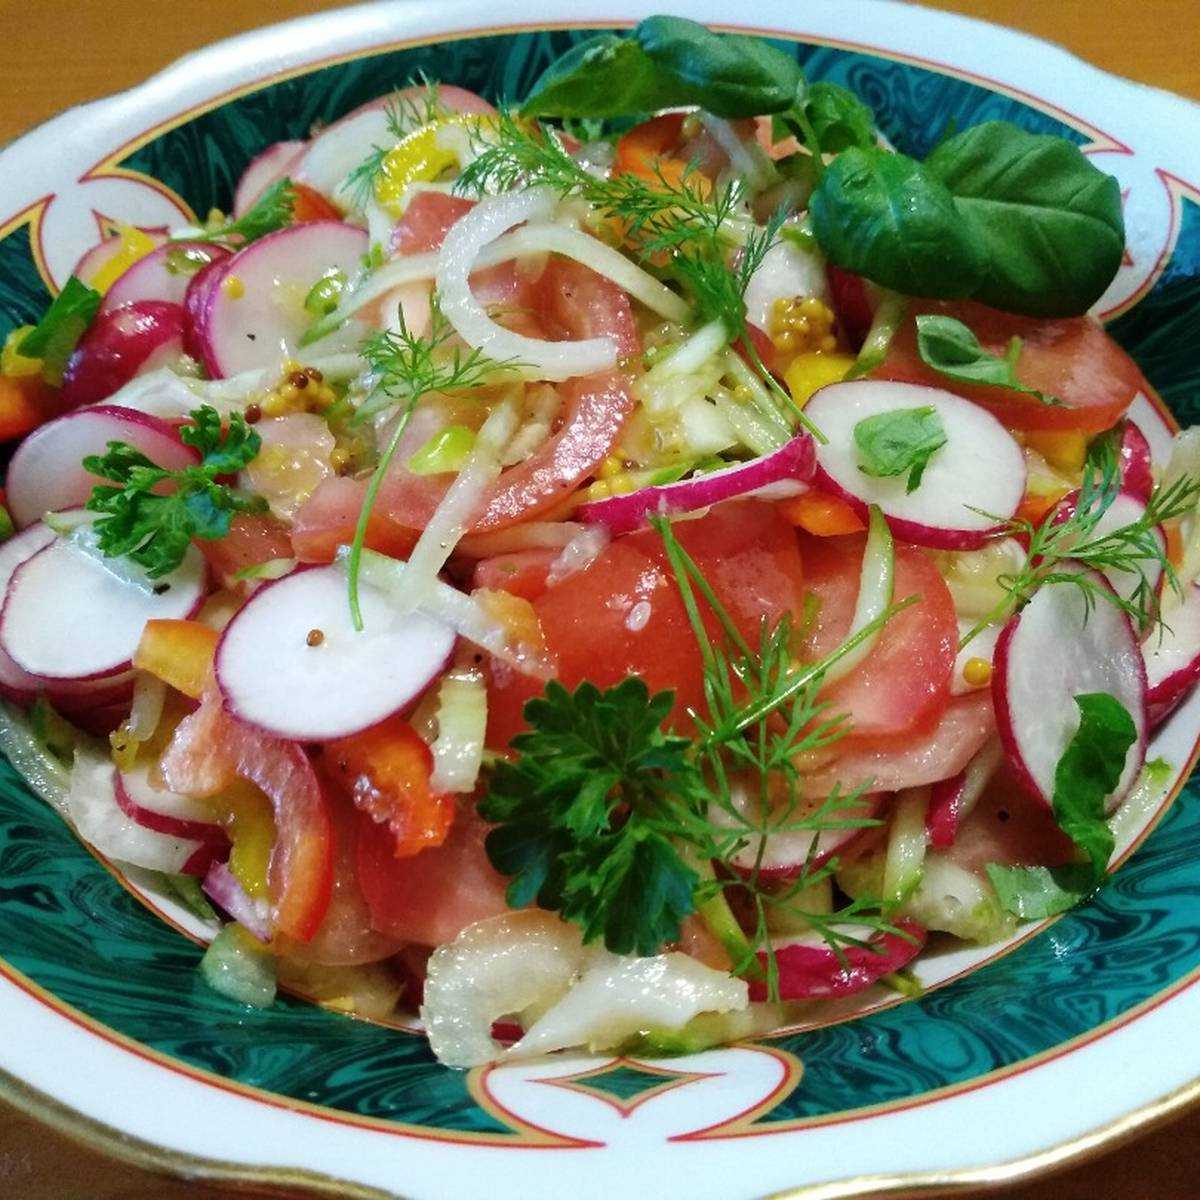 Диета на салатах из овощей, как похудеть на салатах за 2 недели